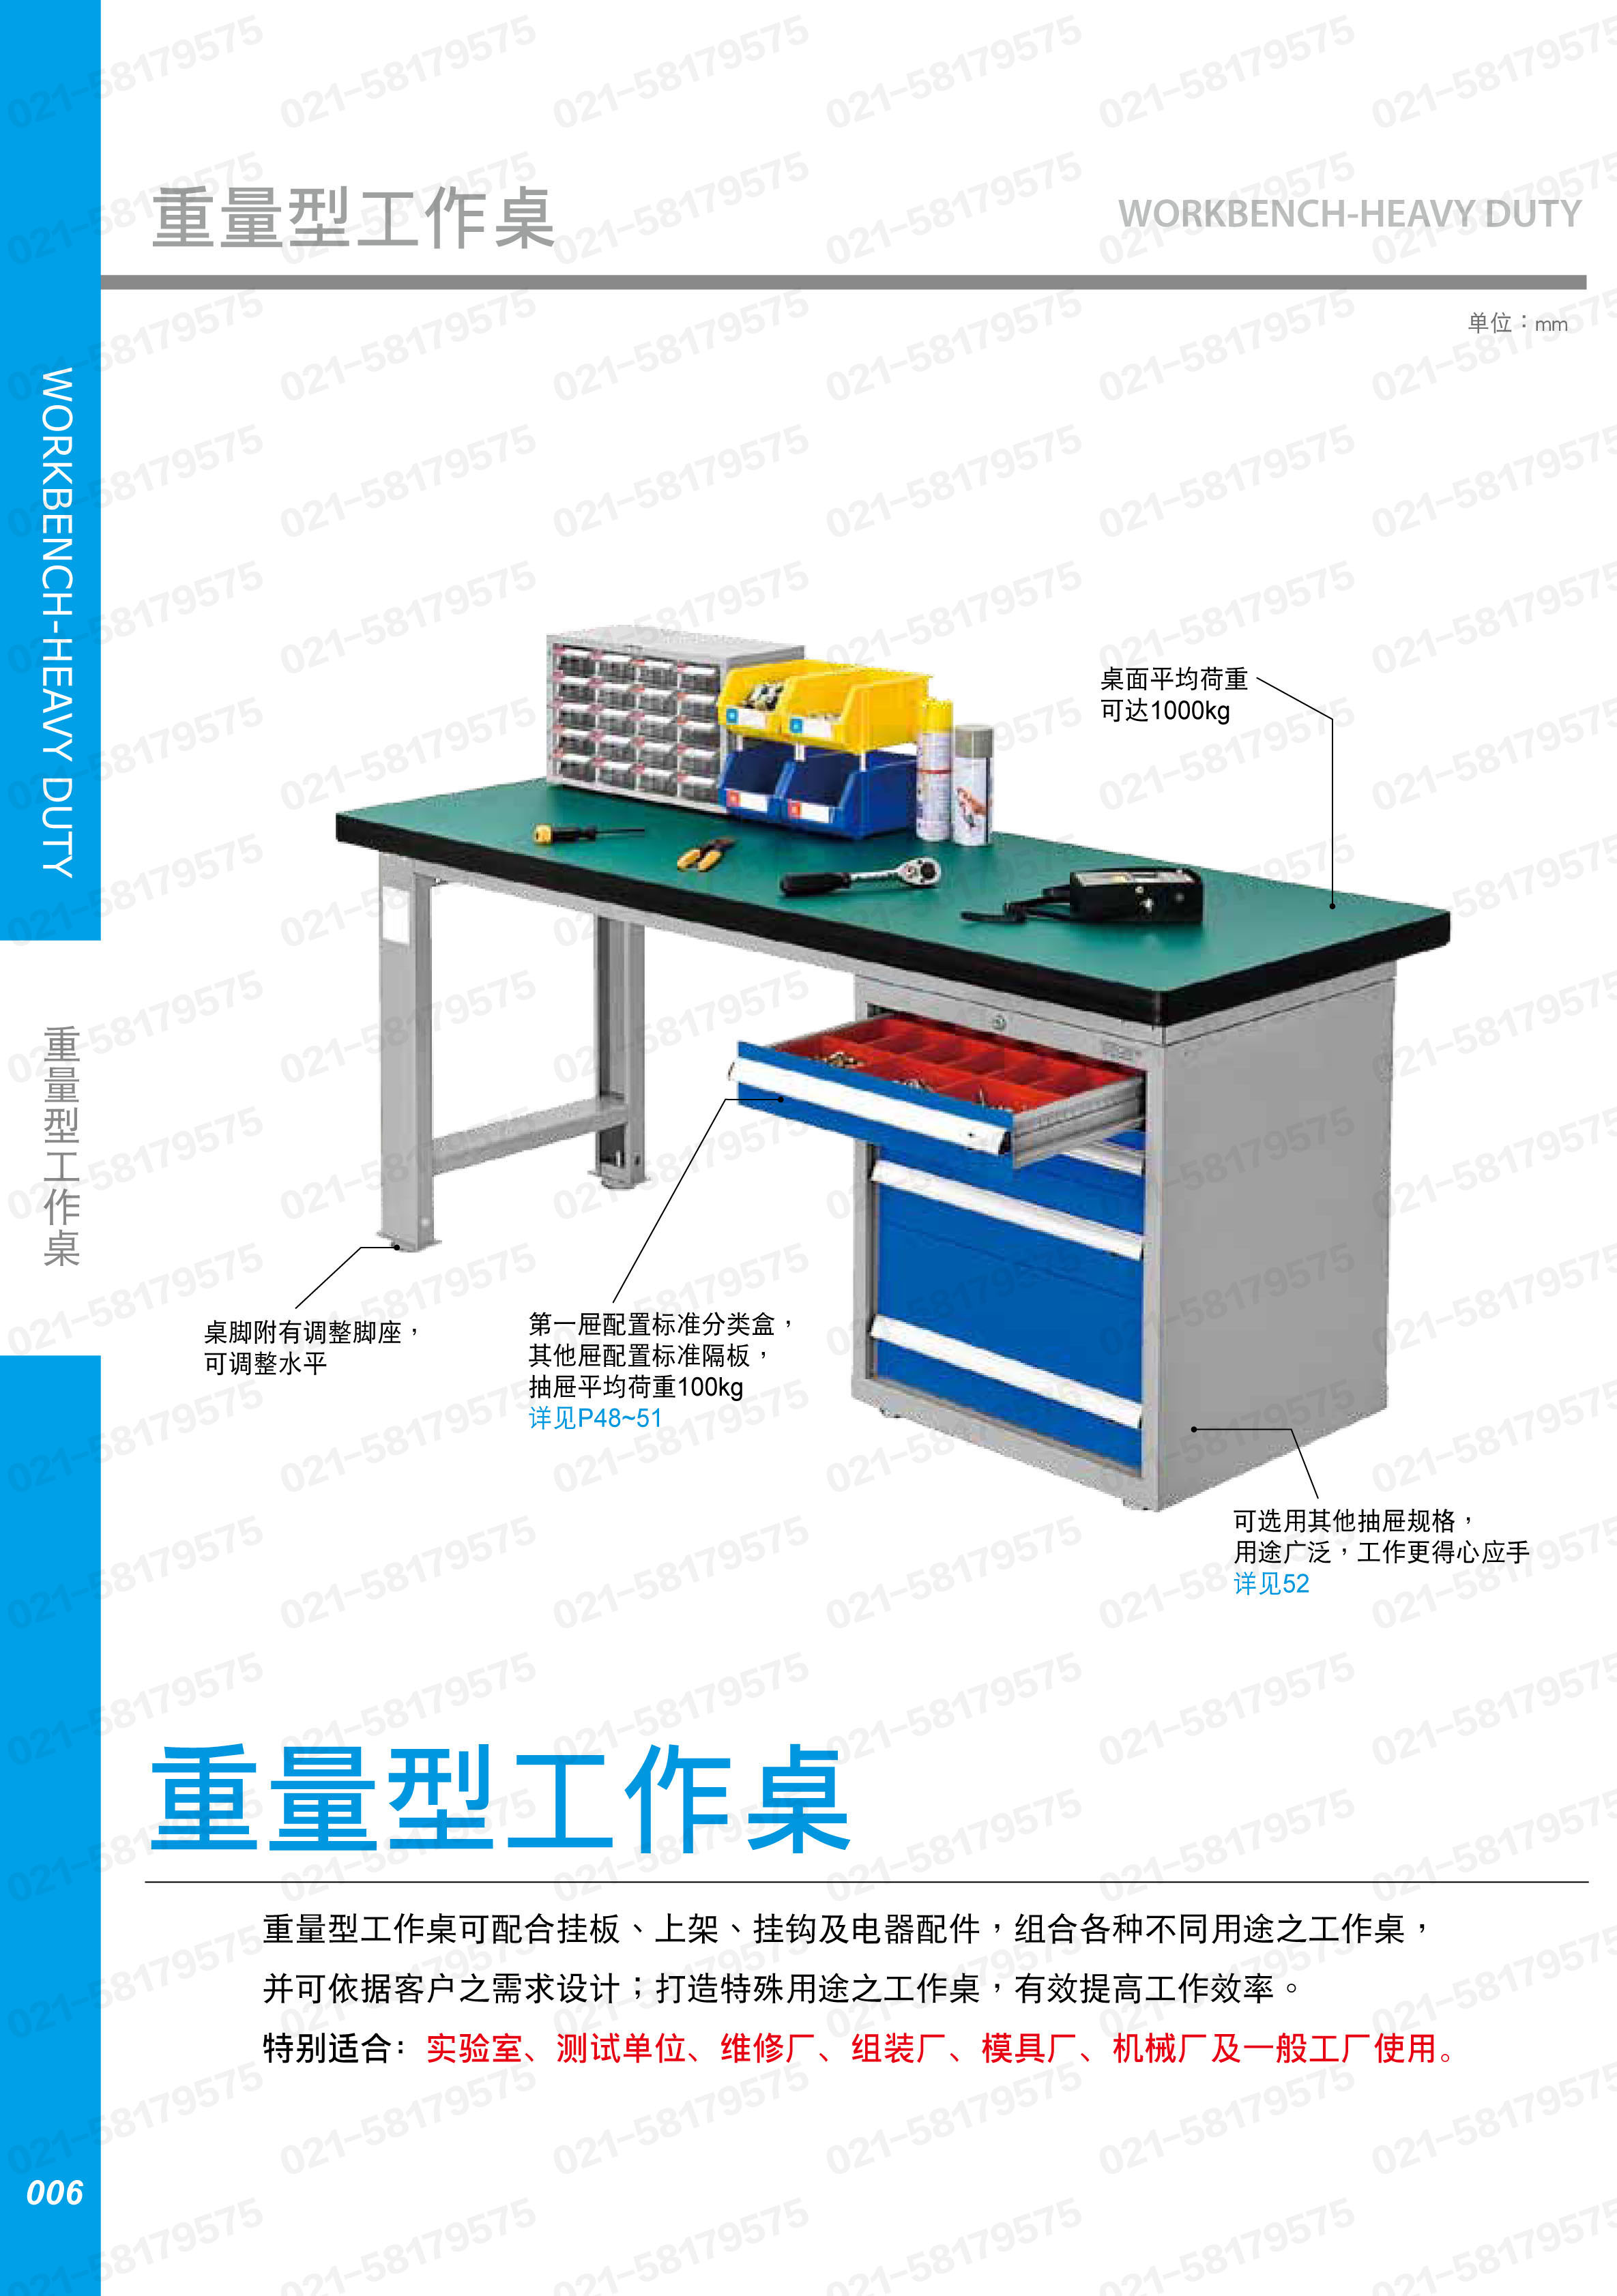 重型工作桌1500×750×800mm平均承重1吨耐磨桌板 4个抽屉边柜,WAS-57042F,3M0887